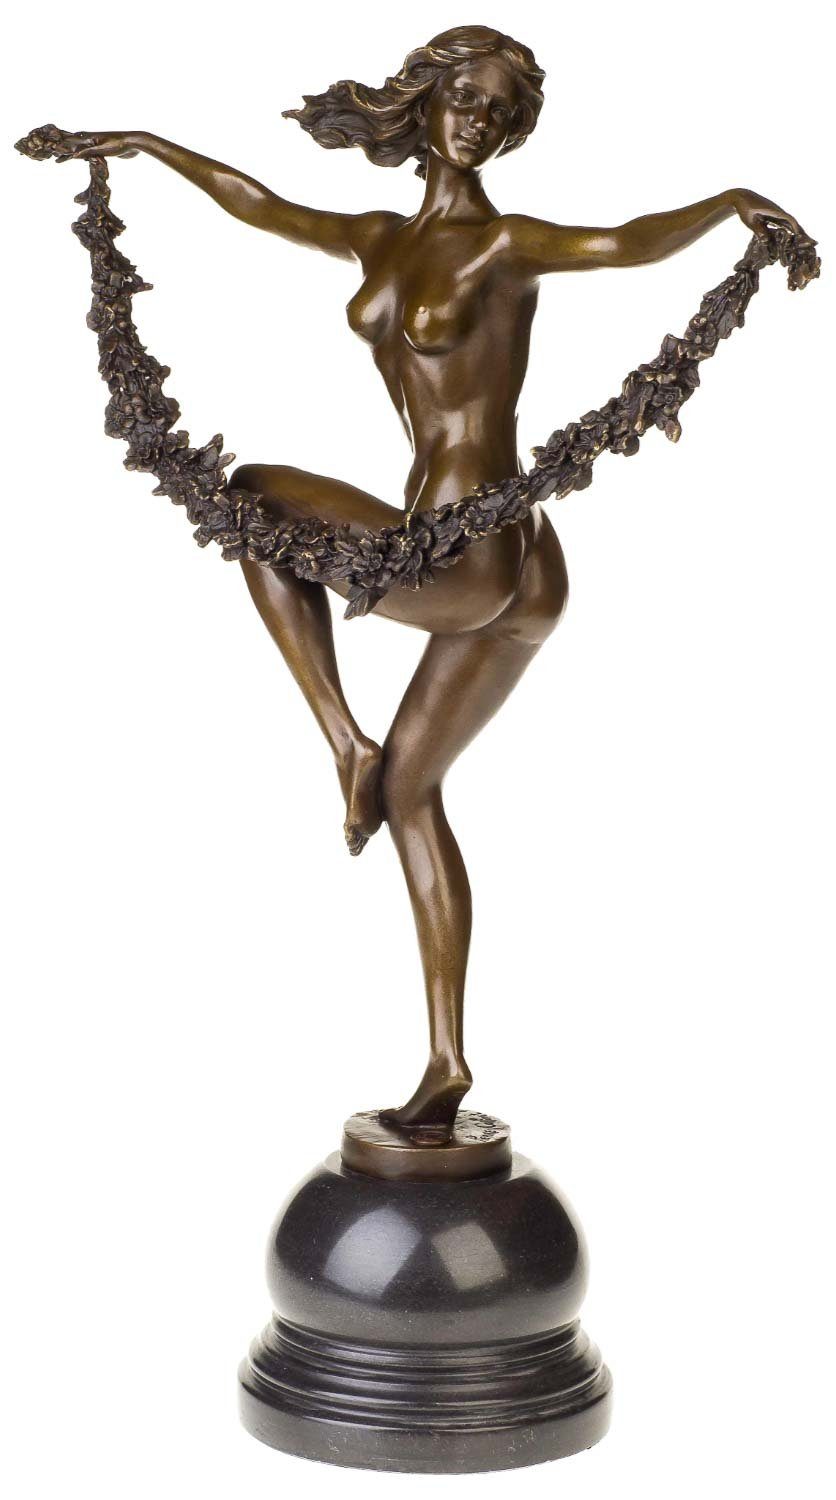 Aubaho Skulptur Bronzeskulptur Tänzerin Blume im Antik-Stil Bronze Figur Statue - 54cm